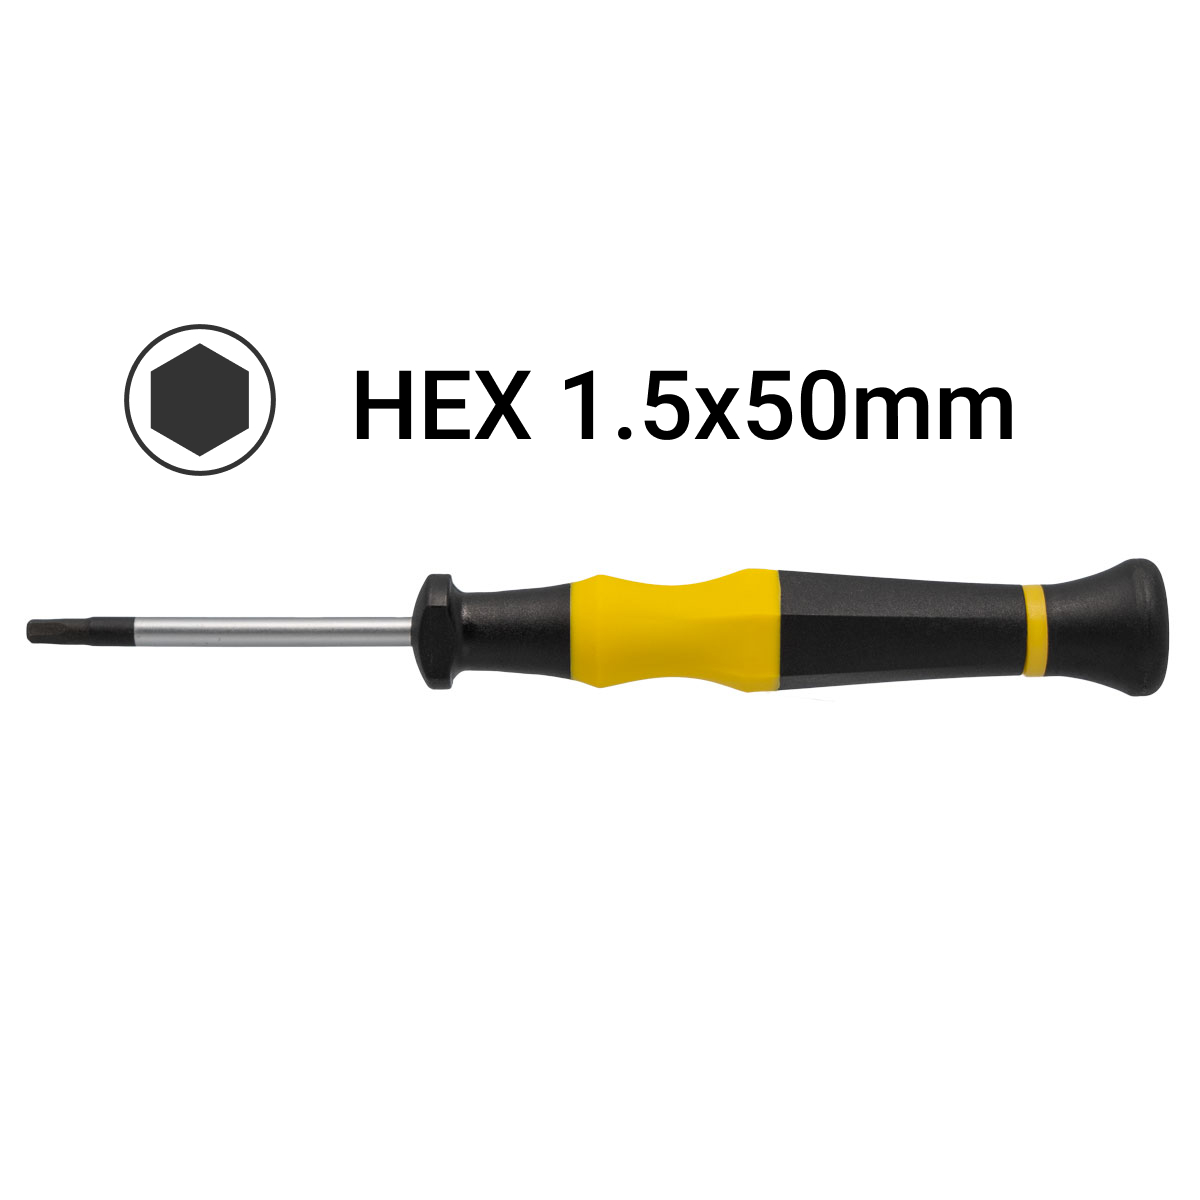 H1.5x50mm Hex Precision Screwdriver